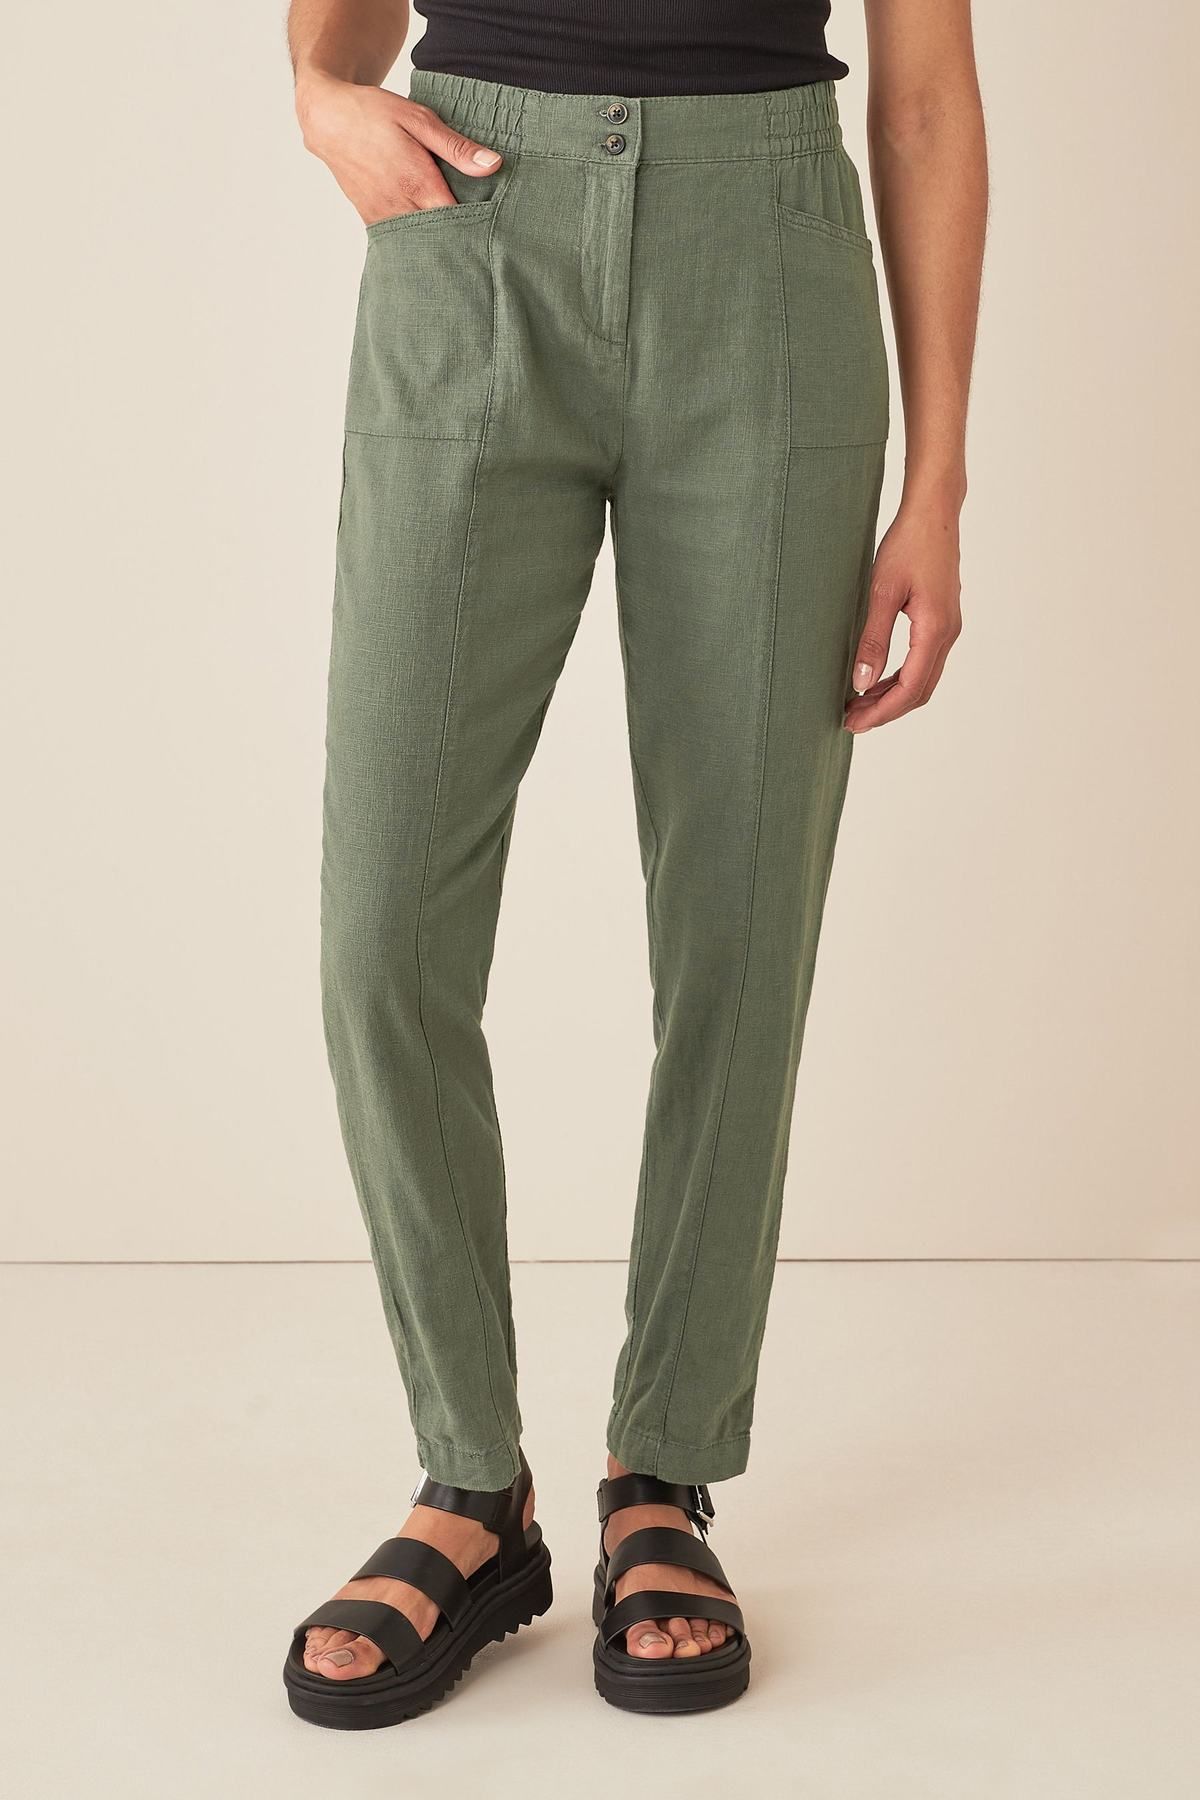 Best linen trousers for women